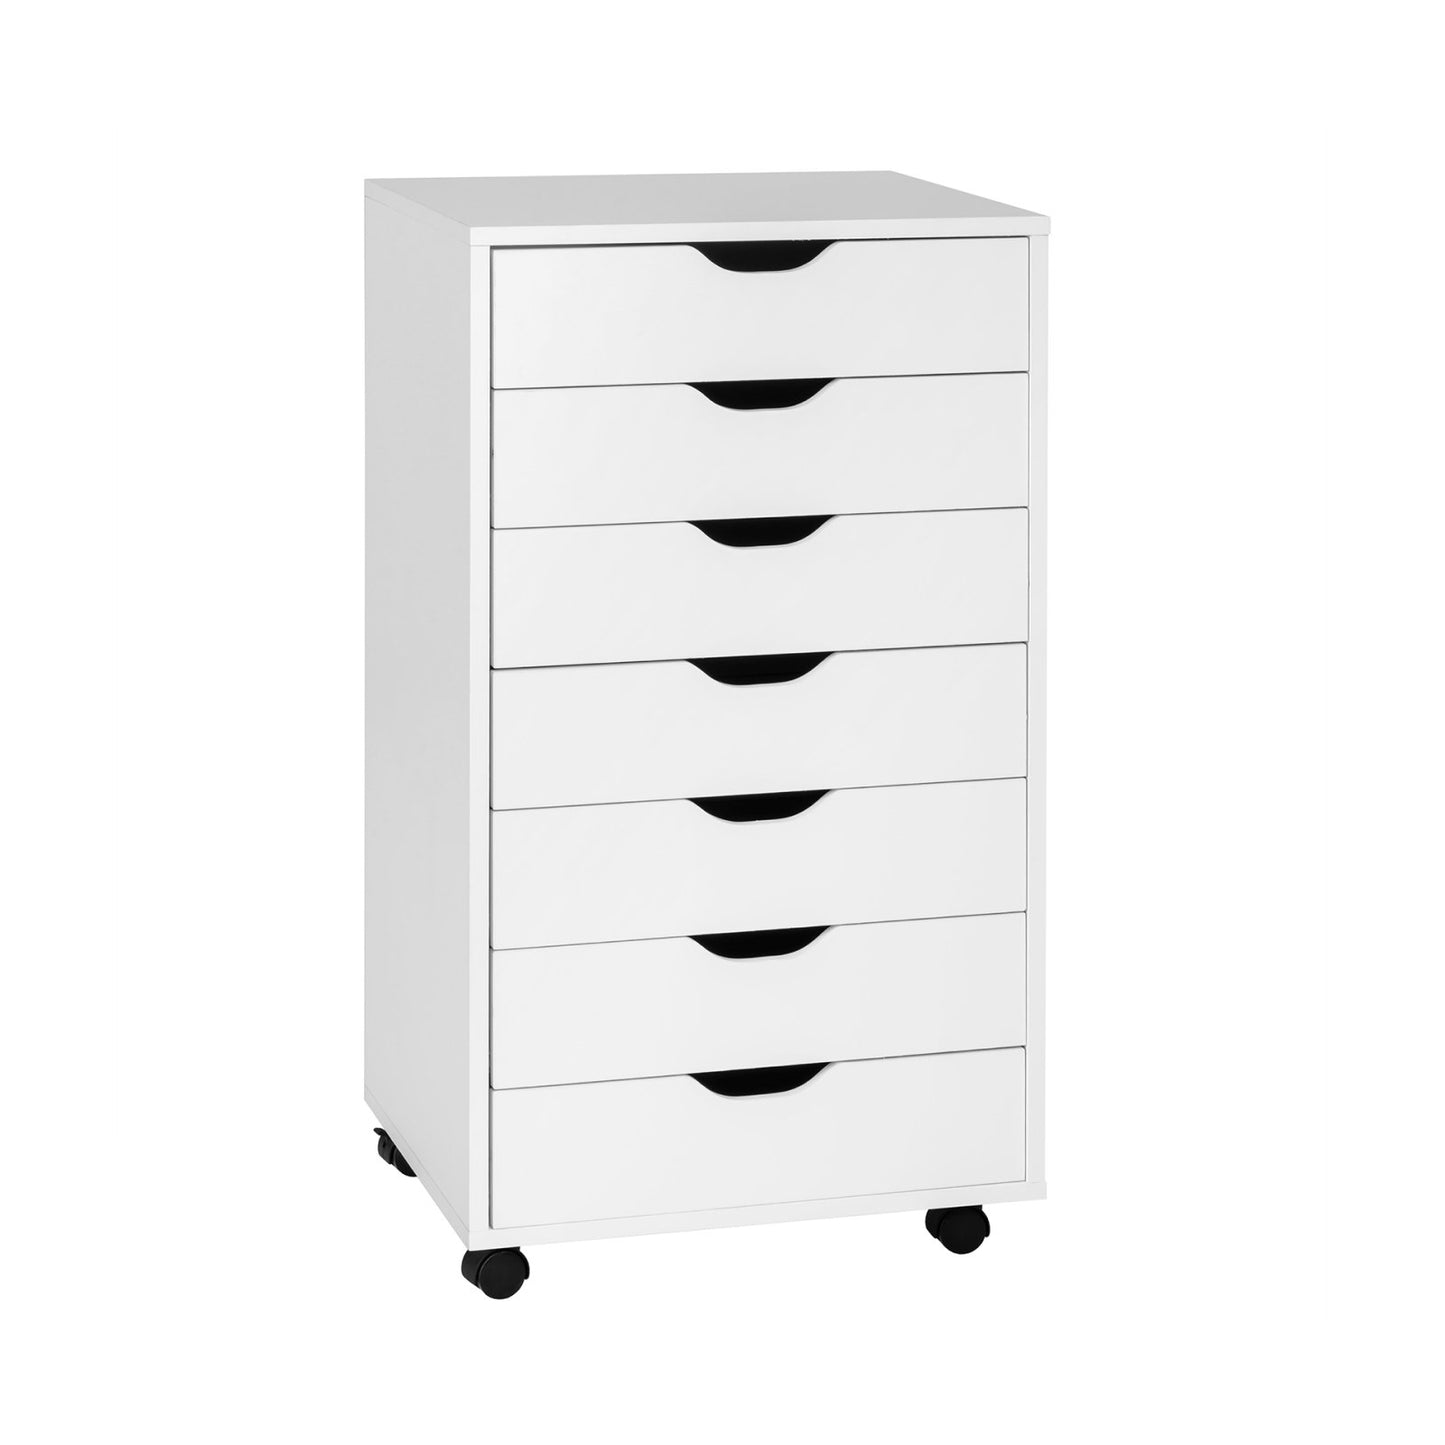 7-Drawer Chest Storage Dresser Floor Cabinet Organizer with Wheels, White at Gallery Canada